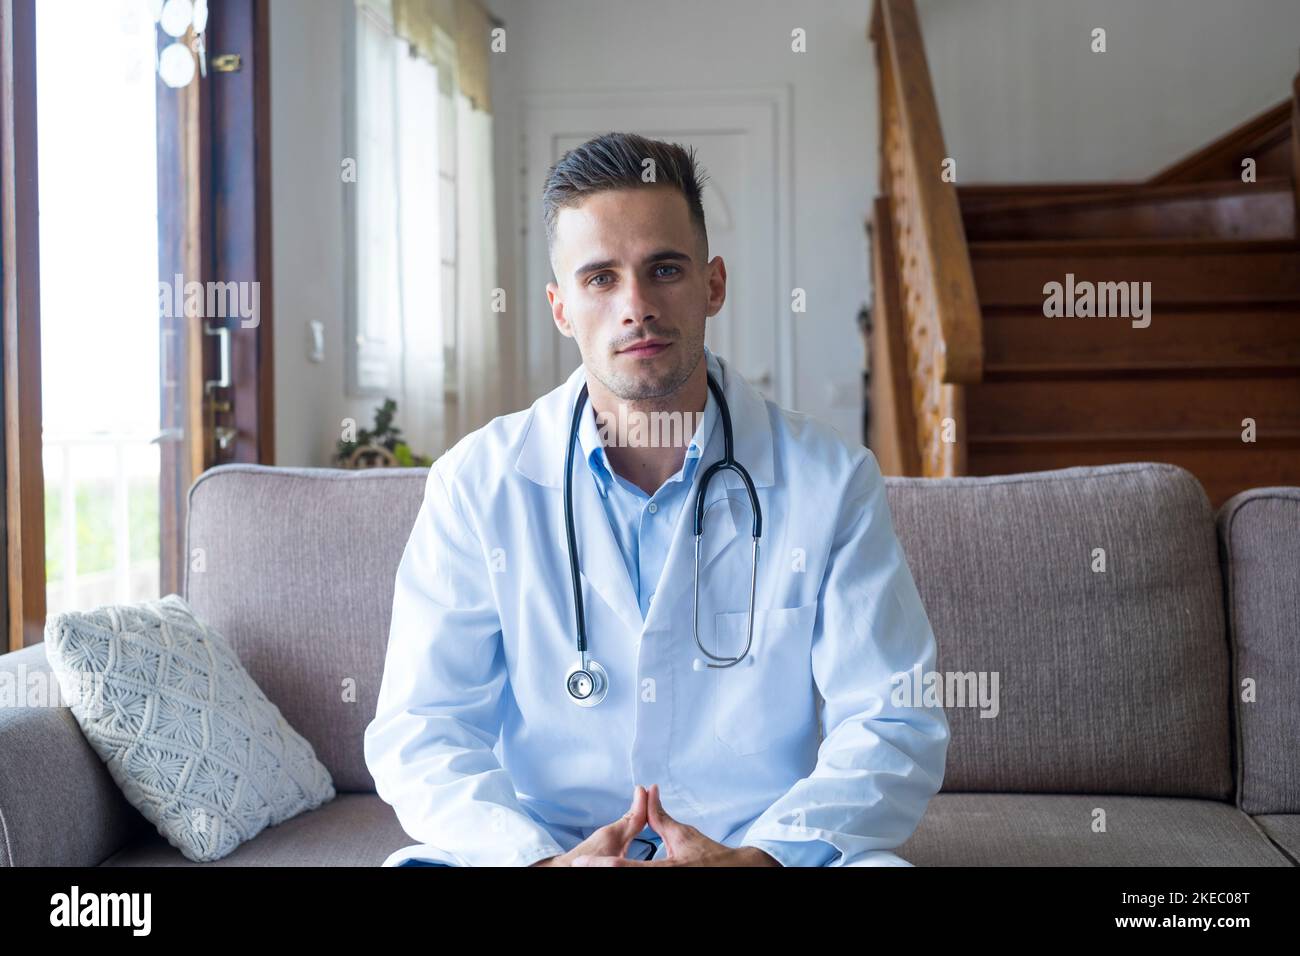 Médecin de sexe masculin, médecin généraliste consulter le patient en ligne par appel vidéo. Portrait d'un homme caucasien beau médecin regardant l'appareil photo. Professionnel de la santé consultant clinique patient Banque D'Images